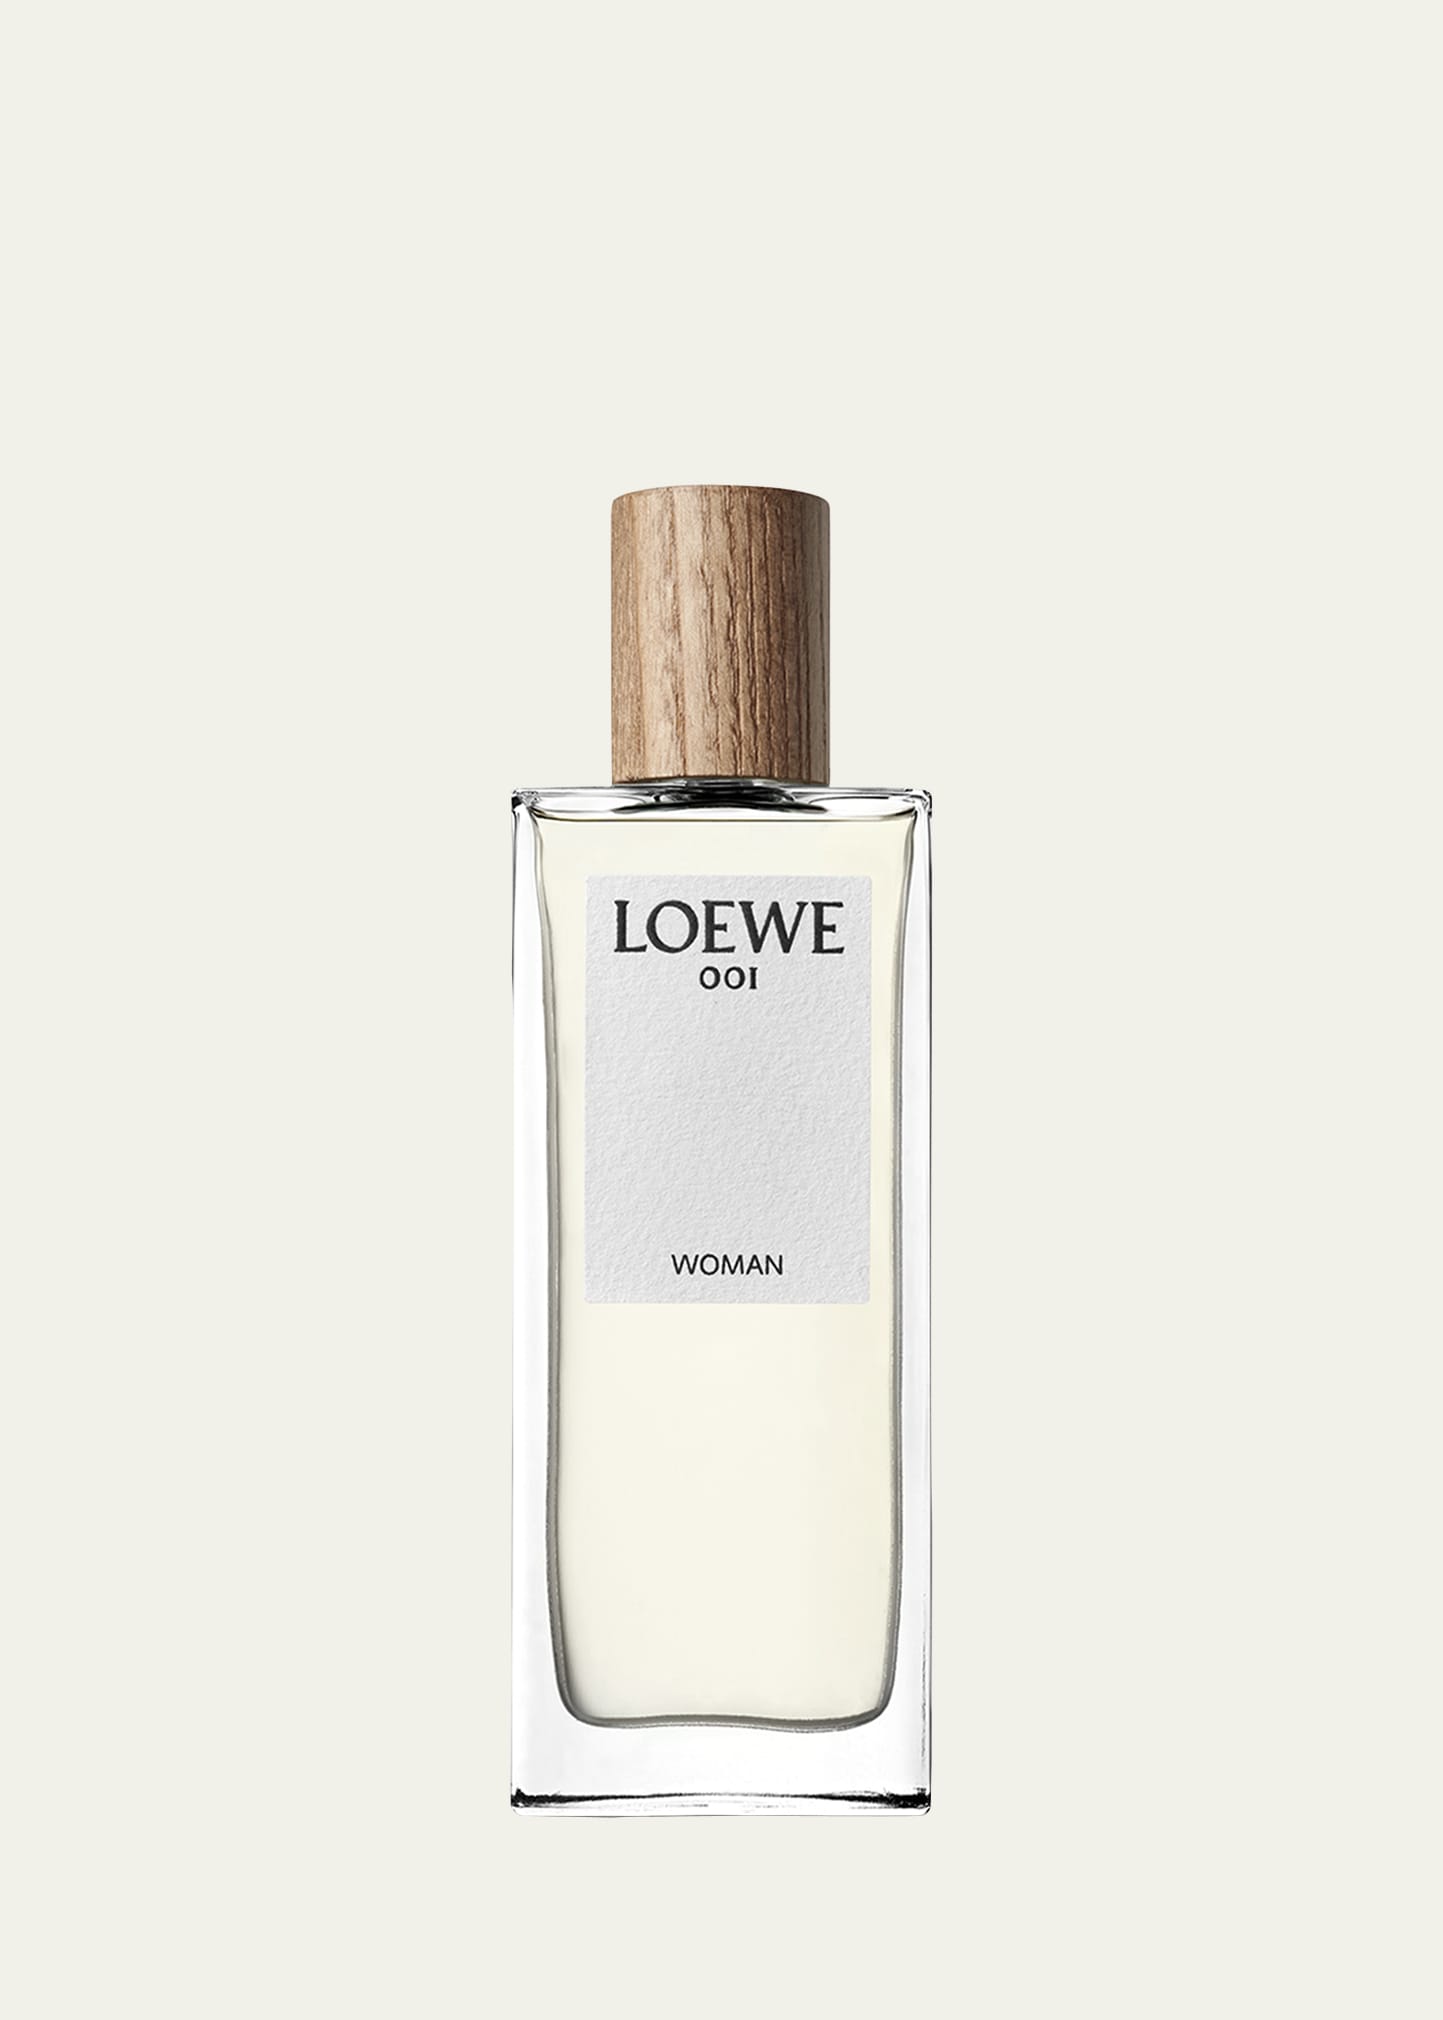 Loewe 1.7 oz. 001 Woman Eau de Parfum